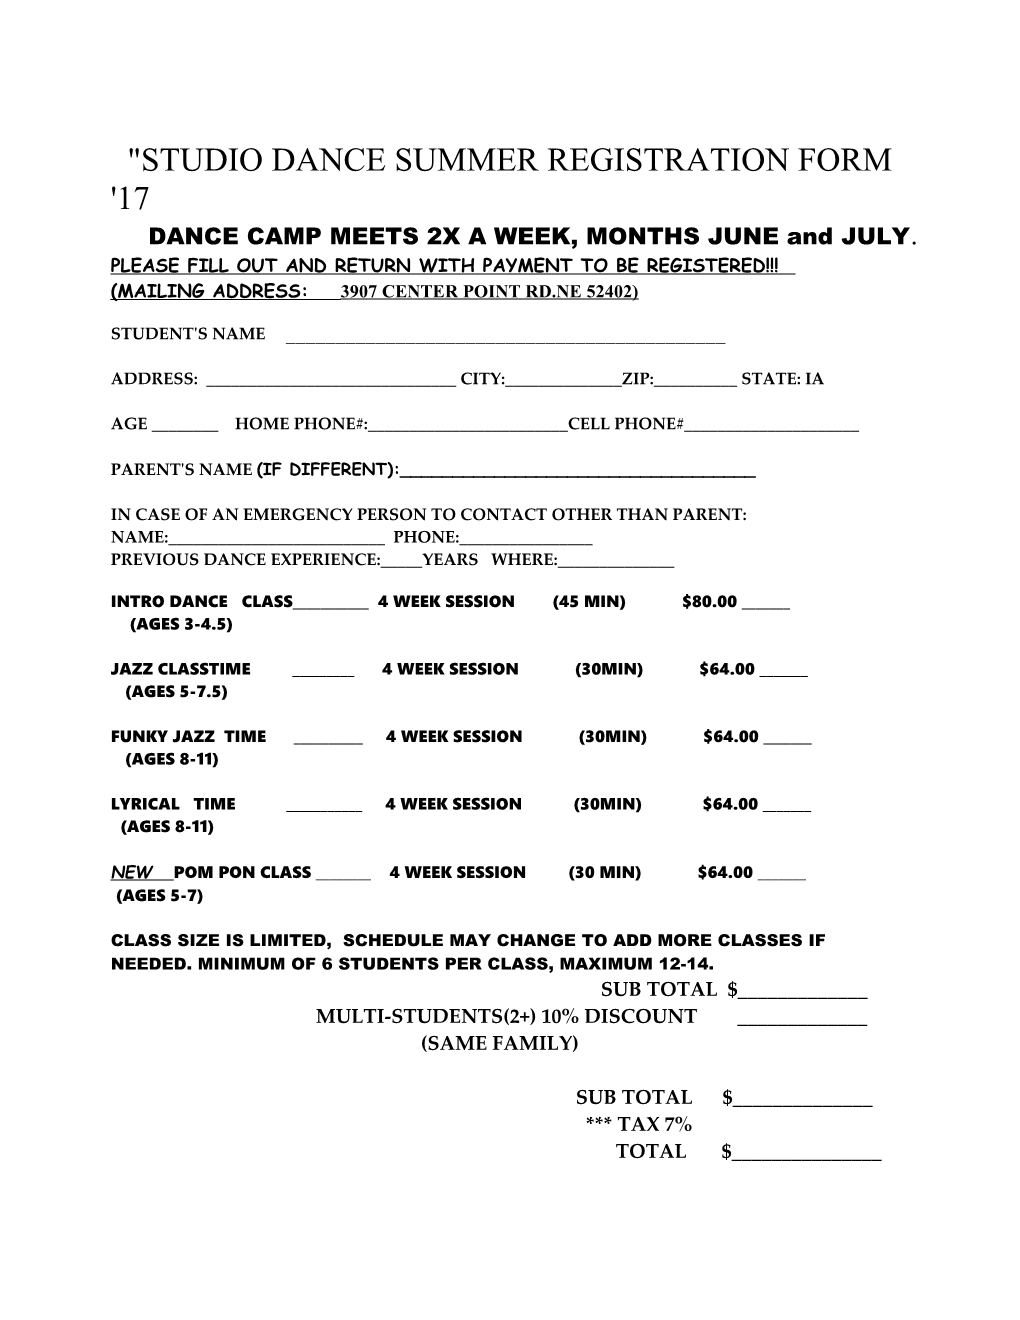 Studio Dance Summer Registration Form '02